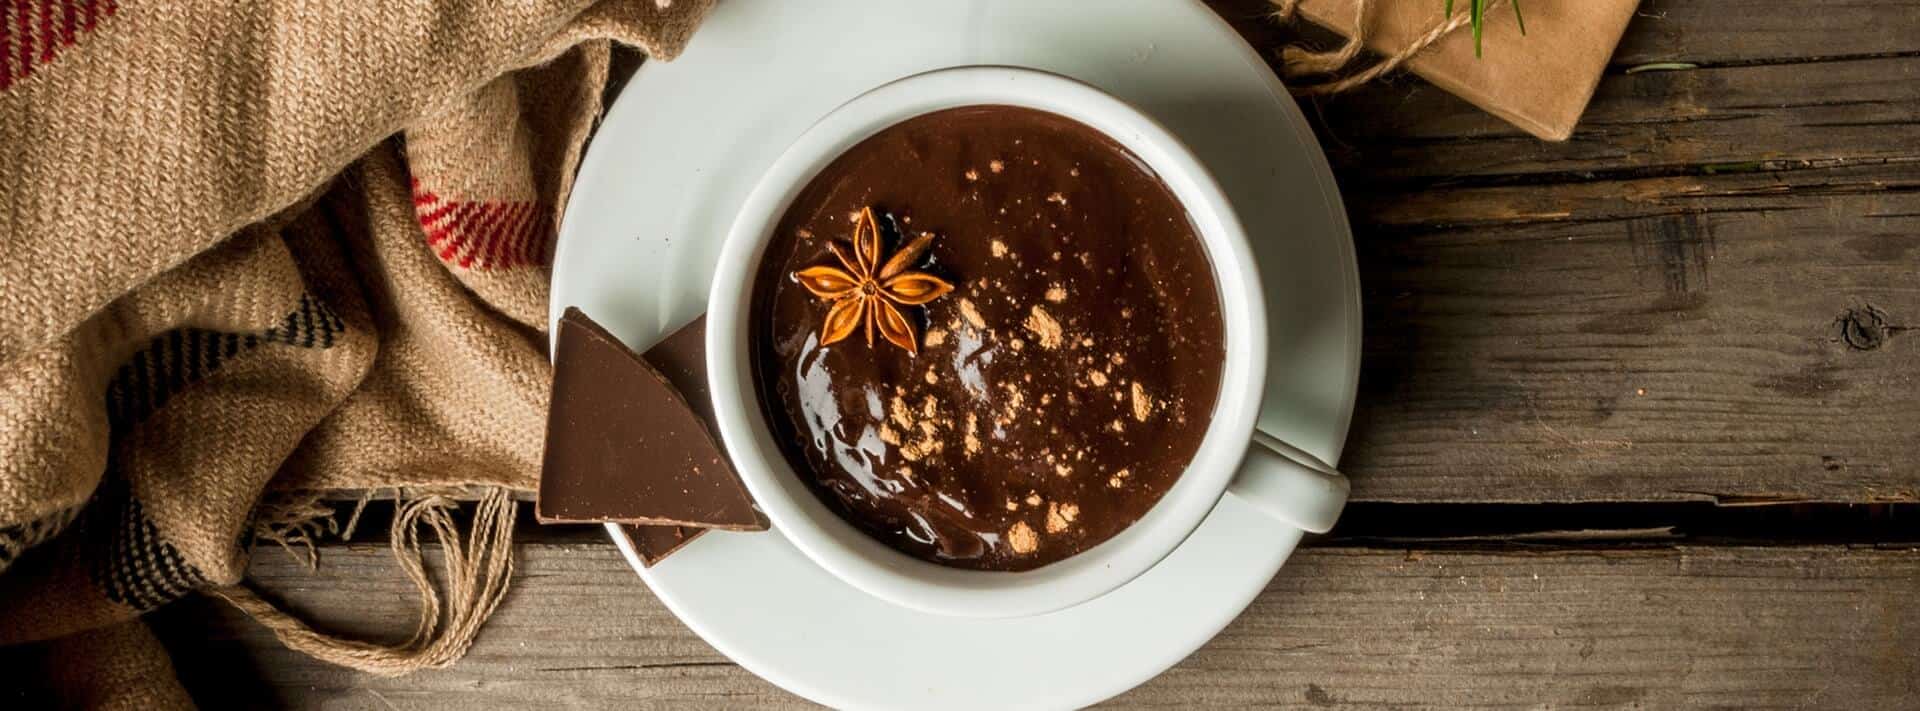 Jak zrobić czekoladę do picia bez grudek?